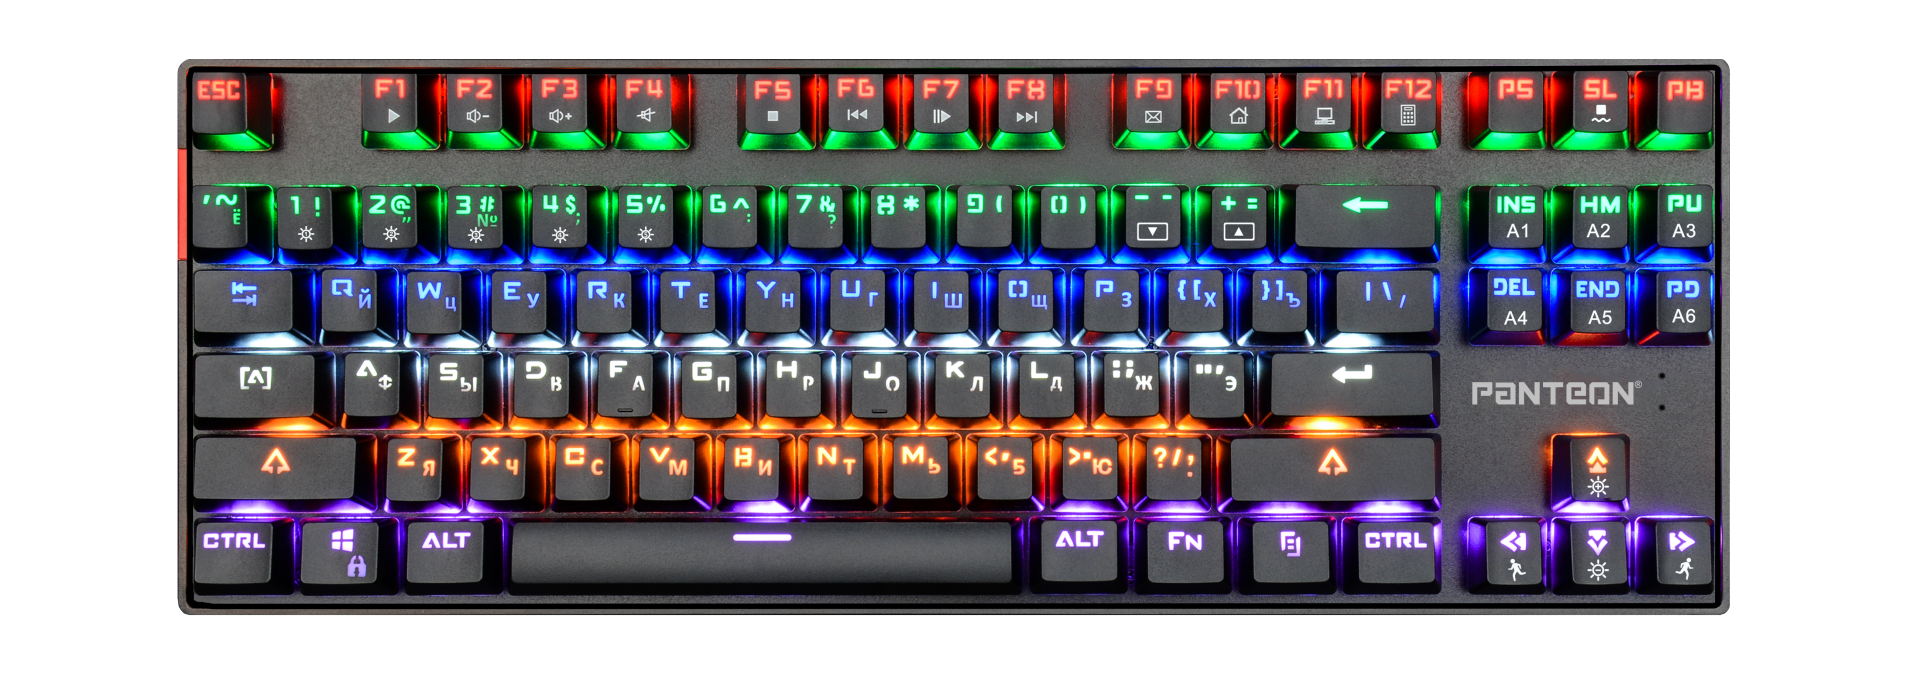 Механическая игровая клавиатура с LED-подсветкой PANTEON T42